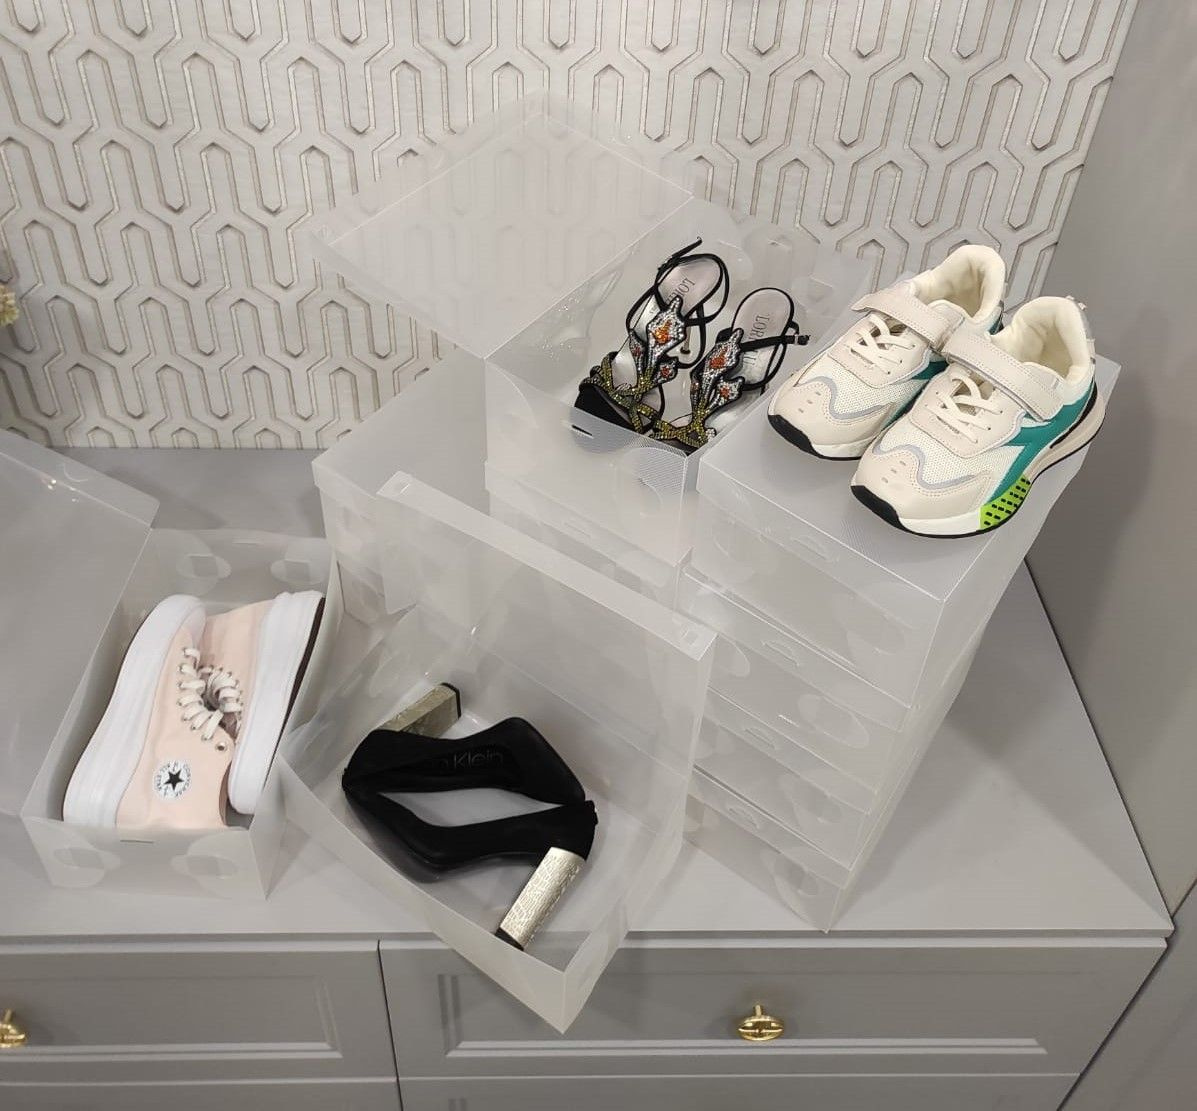 Ищете эффективное решение для хранения обуви? Тогда вам точно понравятся наши удобные  и качественные коробки.  Они помогут вам организовать пространство и сохранить порядок в вашем шкафу или гардеробе. Вы без труда найдете нужную вам пару, при этом не нарушив порядок.